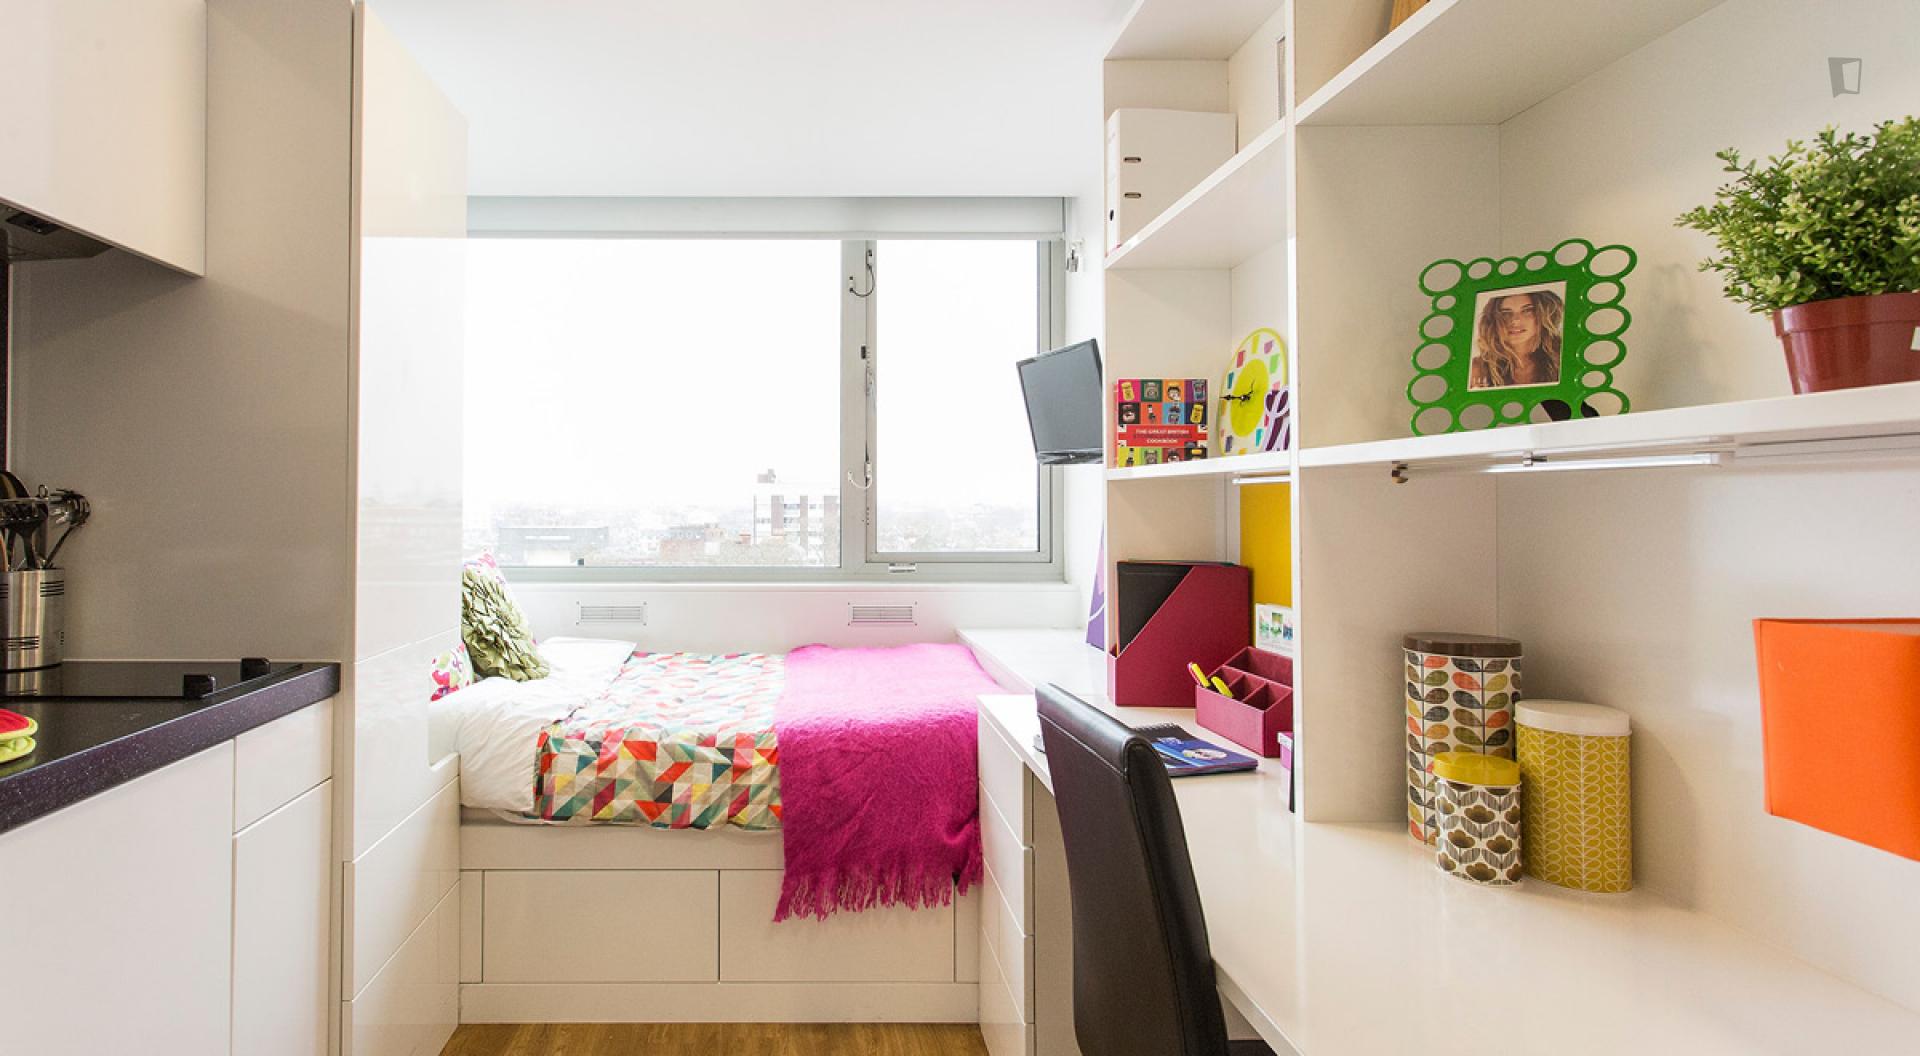 Manresa - Bedroom in an expat rental in London